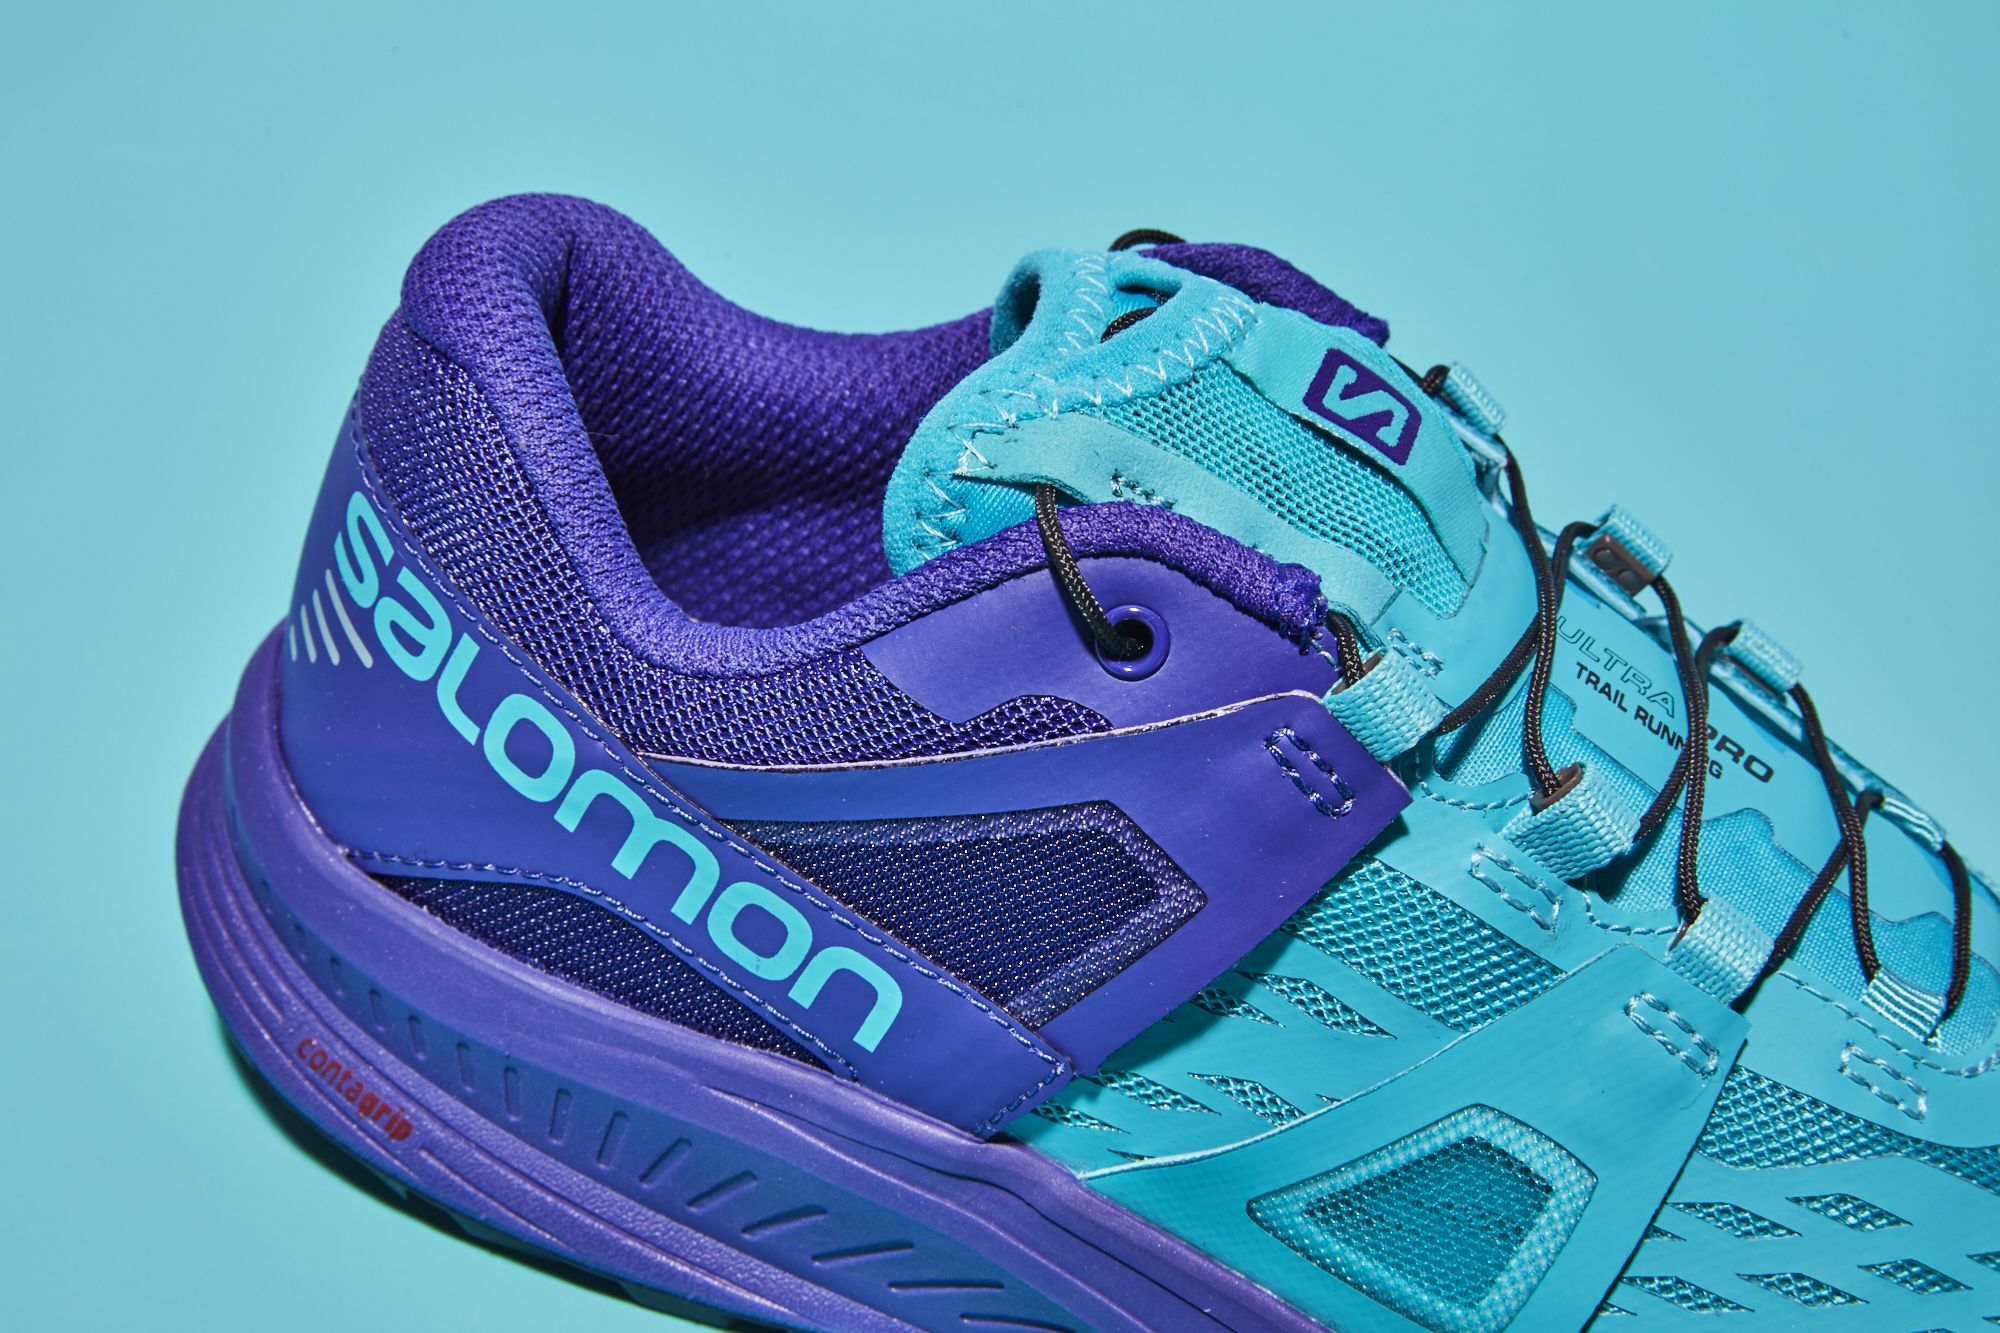 Ewell ribben vindruer Salomon Ultra Pro Review - Trail Running Shoe